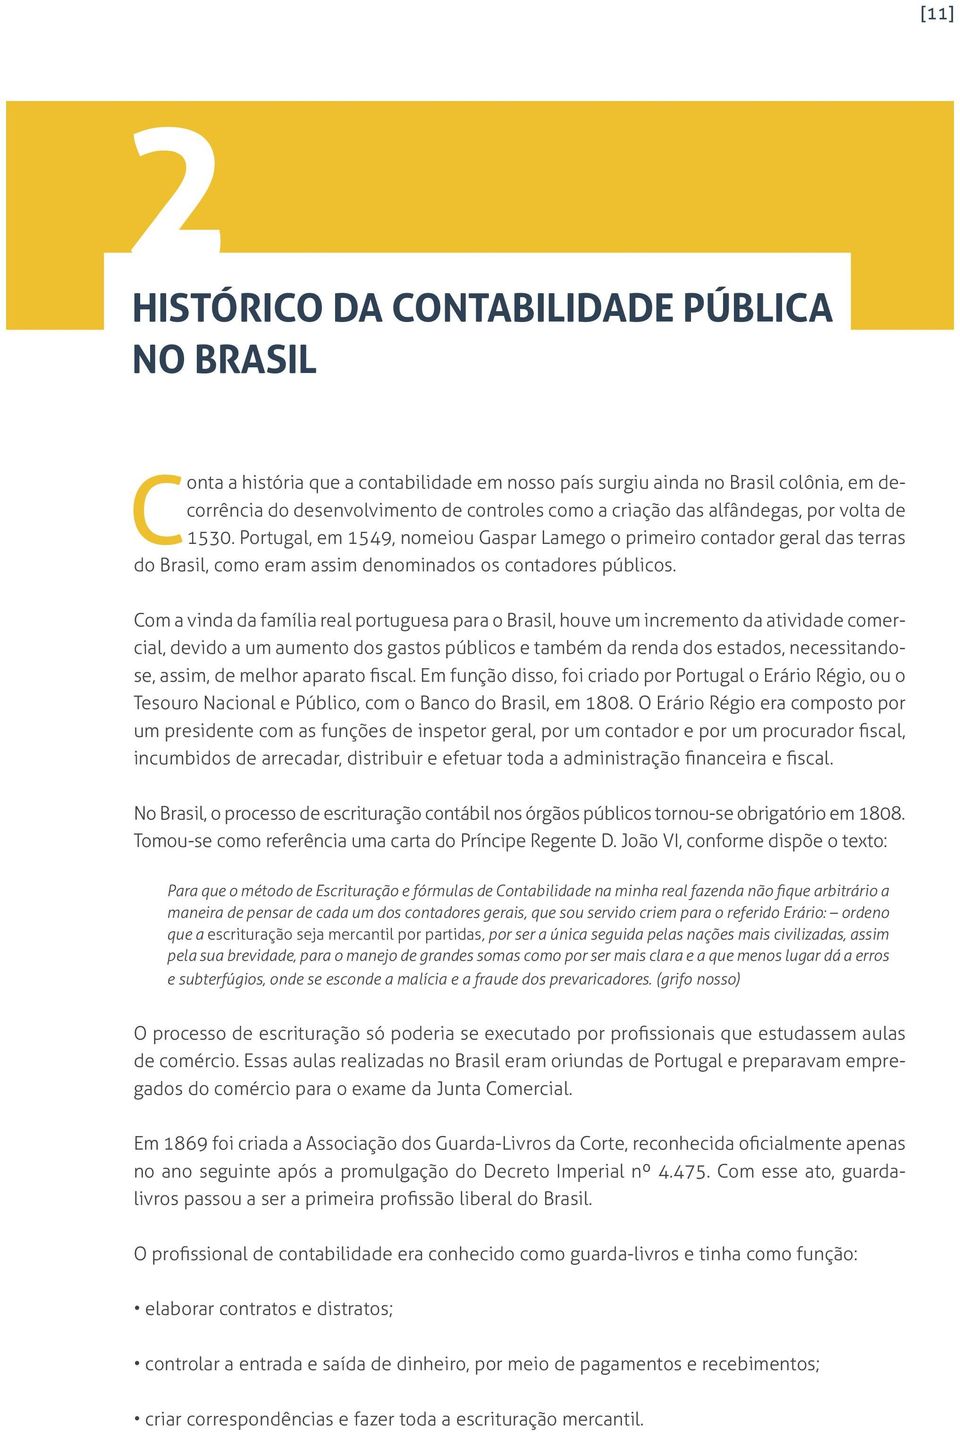 Com a vinda da família real portuguesa para o Brasil, houve um incremento da atividade comercial, devido a um aumento dos gastos públicos e também da renda dos estados, necessitandose, assim, de